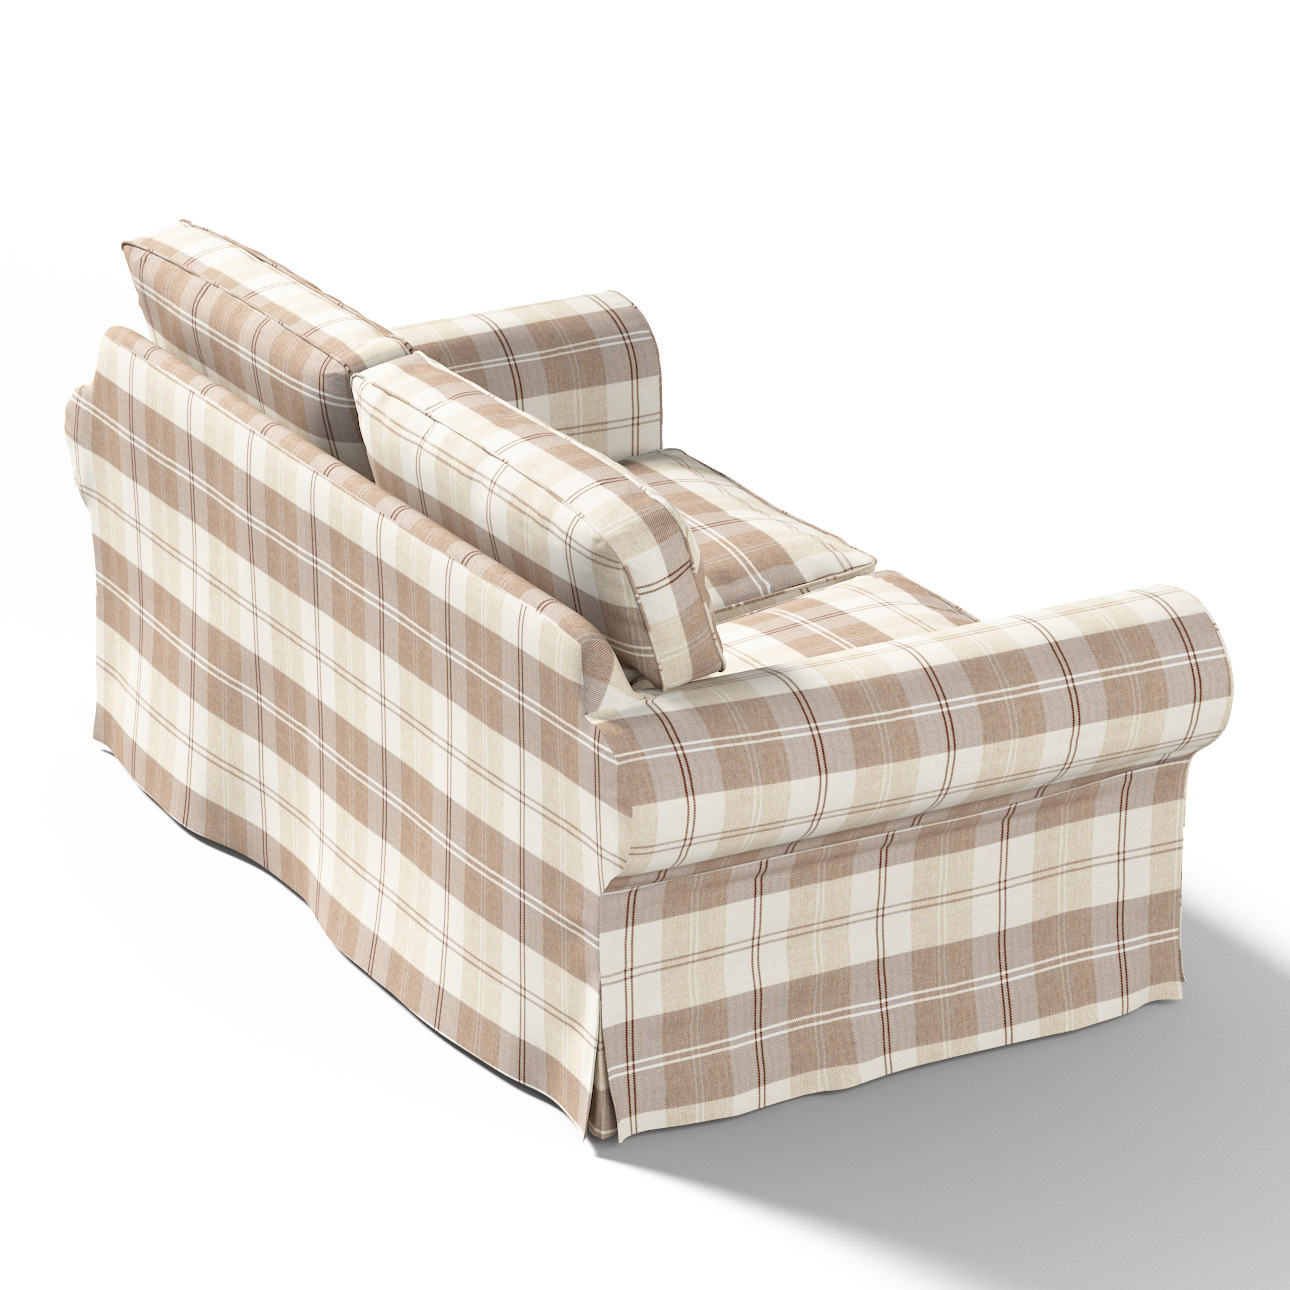 Bezug für Ektorp 2-Sitzer Schlafsofa NEUES Modell, braun-beige, Sofabezug f günstig online kaufen